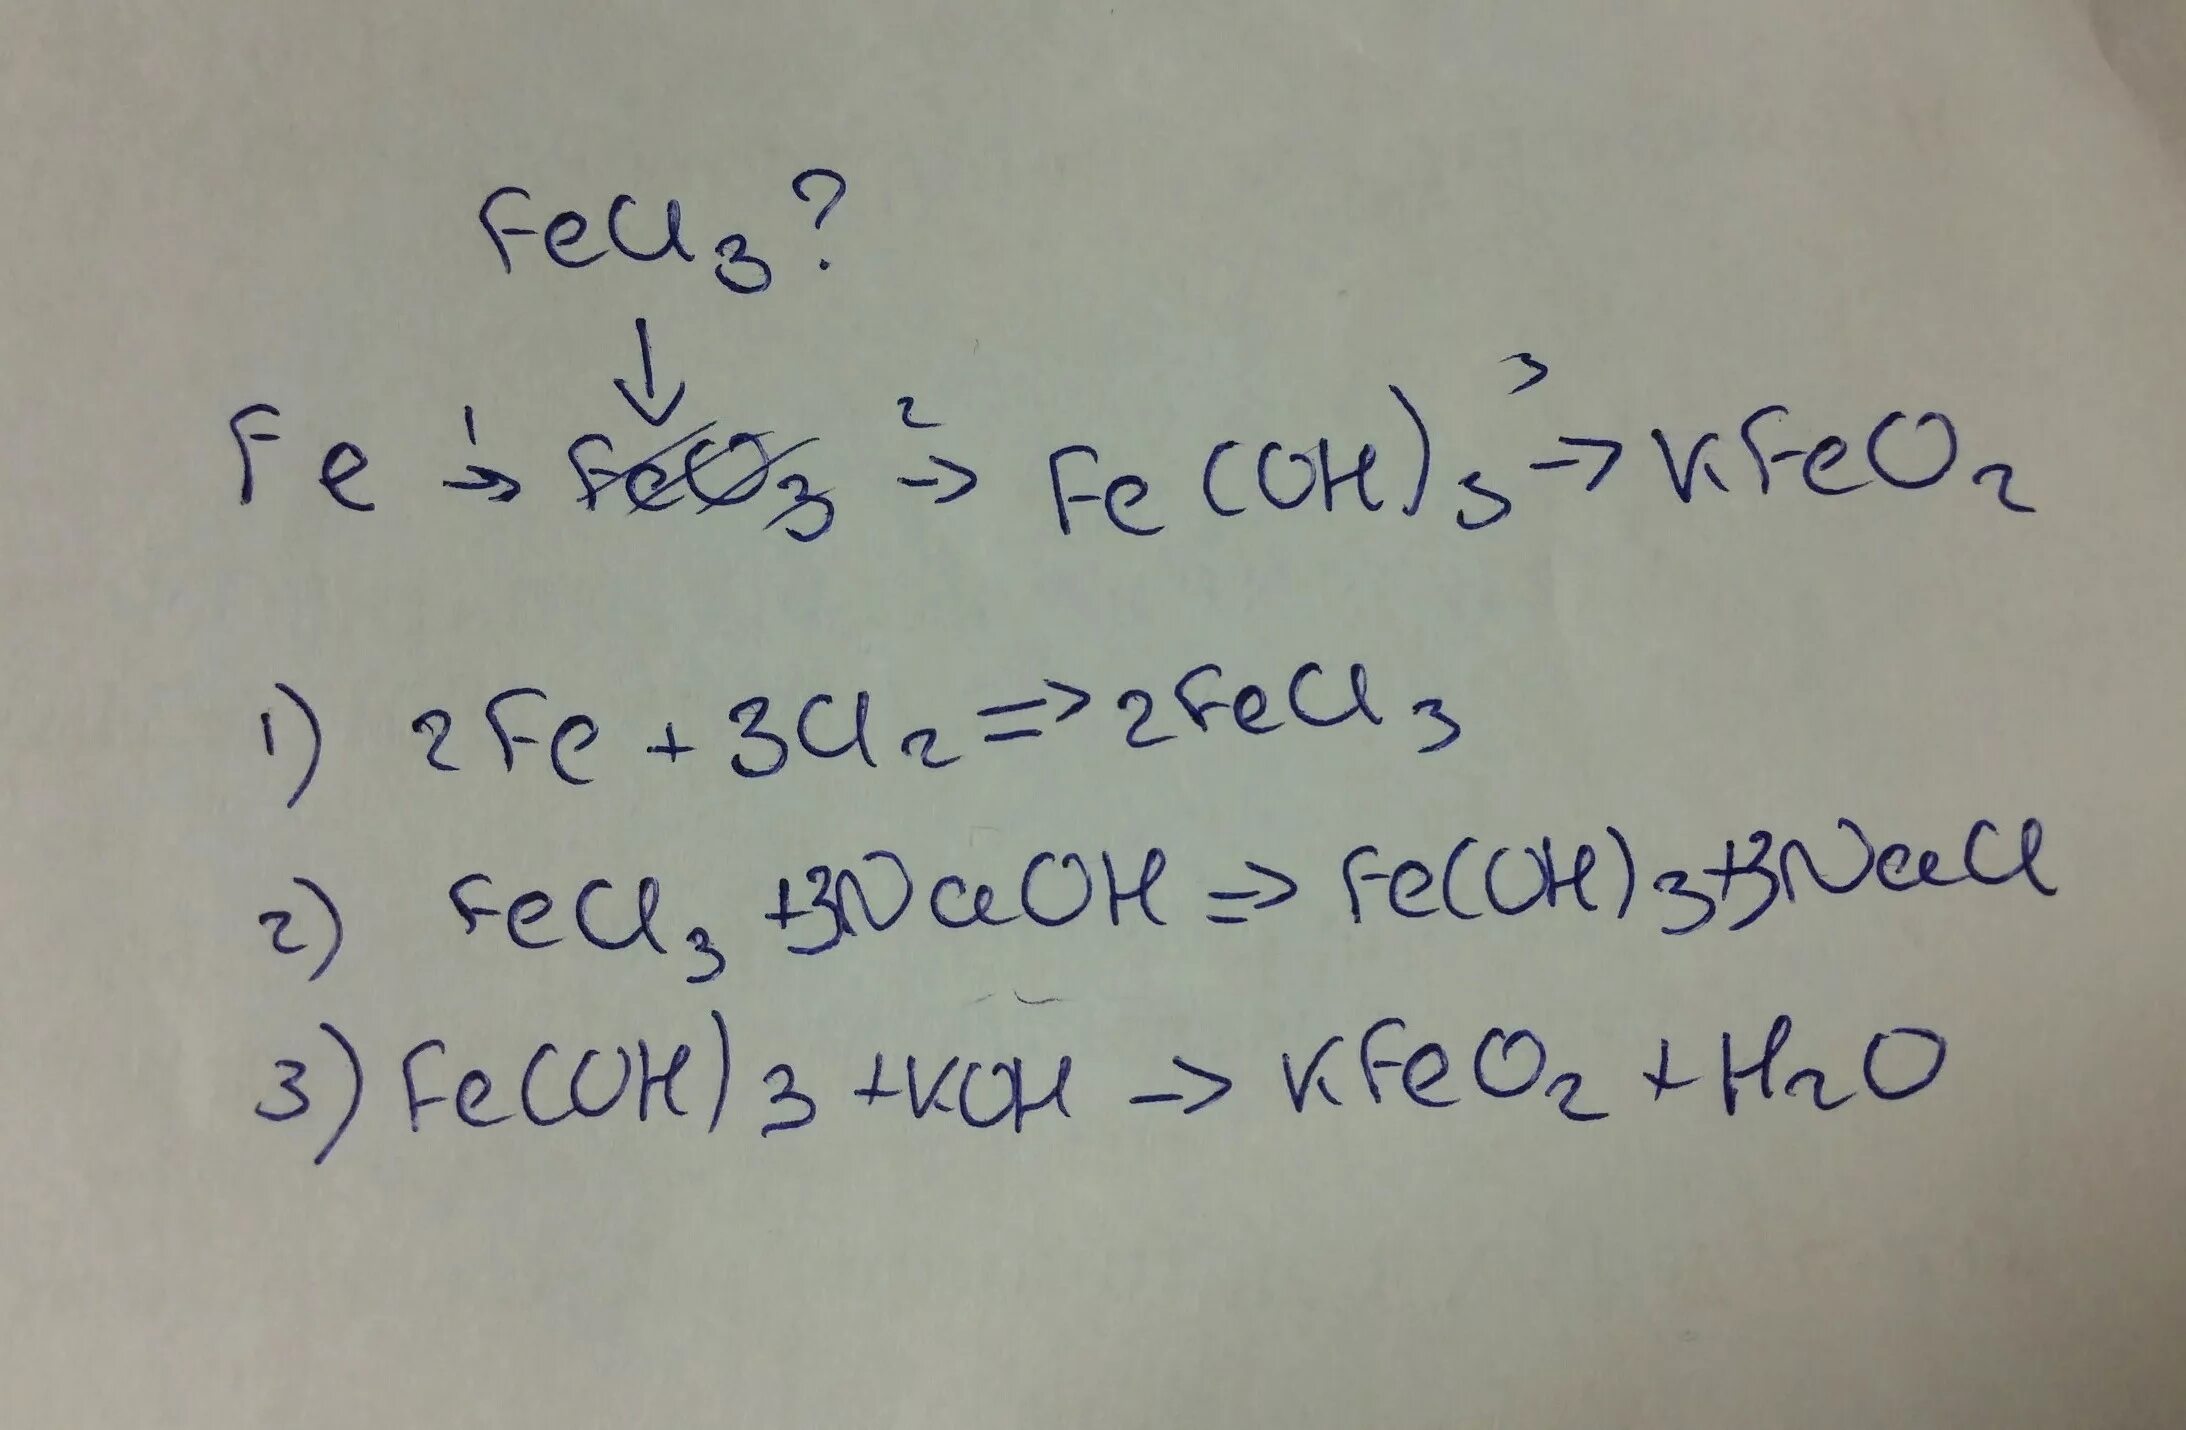 Fe(Oh)3. Fe(Oh)3+feo. Fe + HCE-fece 3 + h 2. Fe Oh 3 kfeo2.